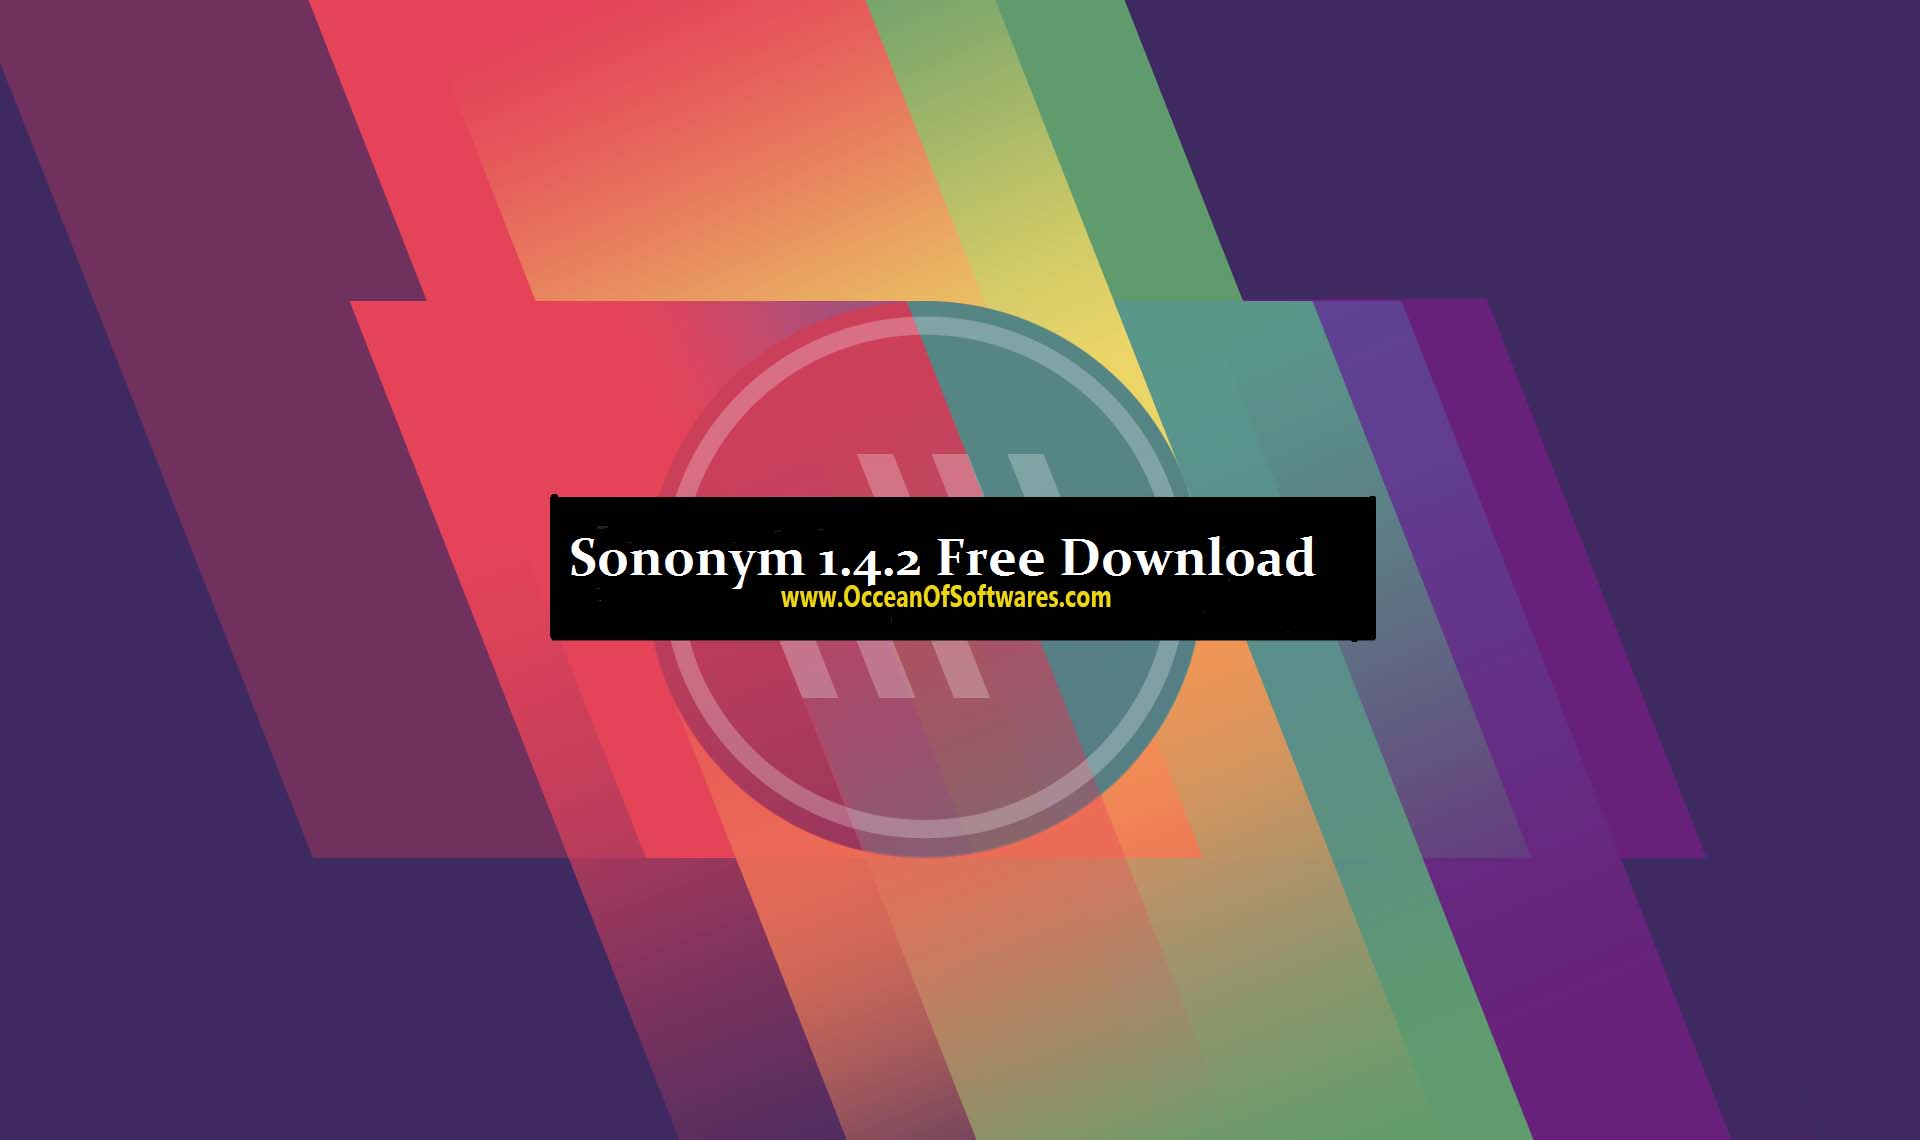 Sononym 1.4.2 Free Download